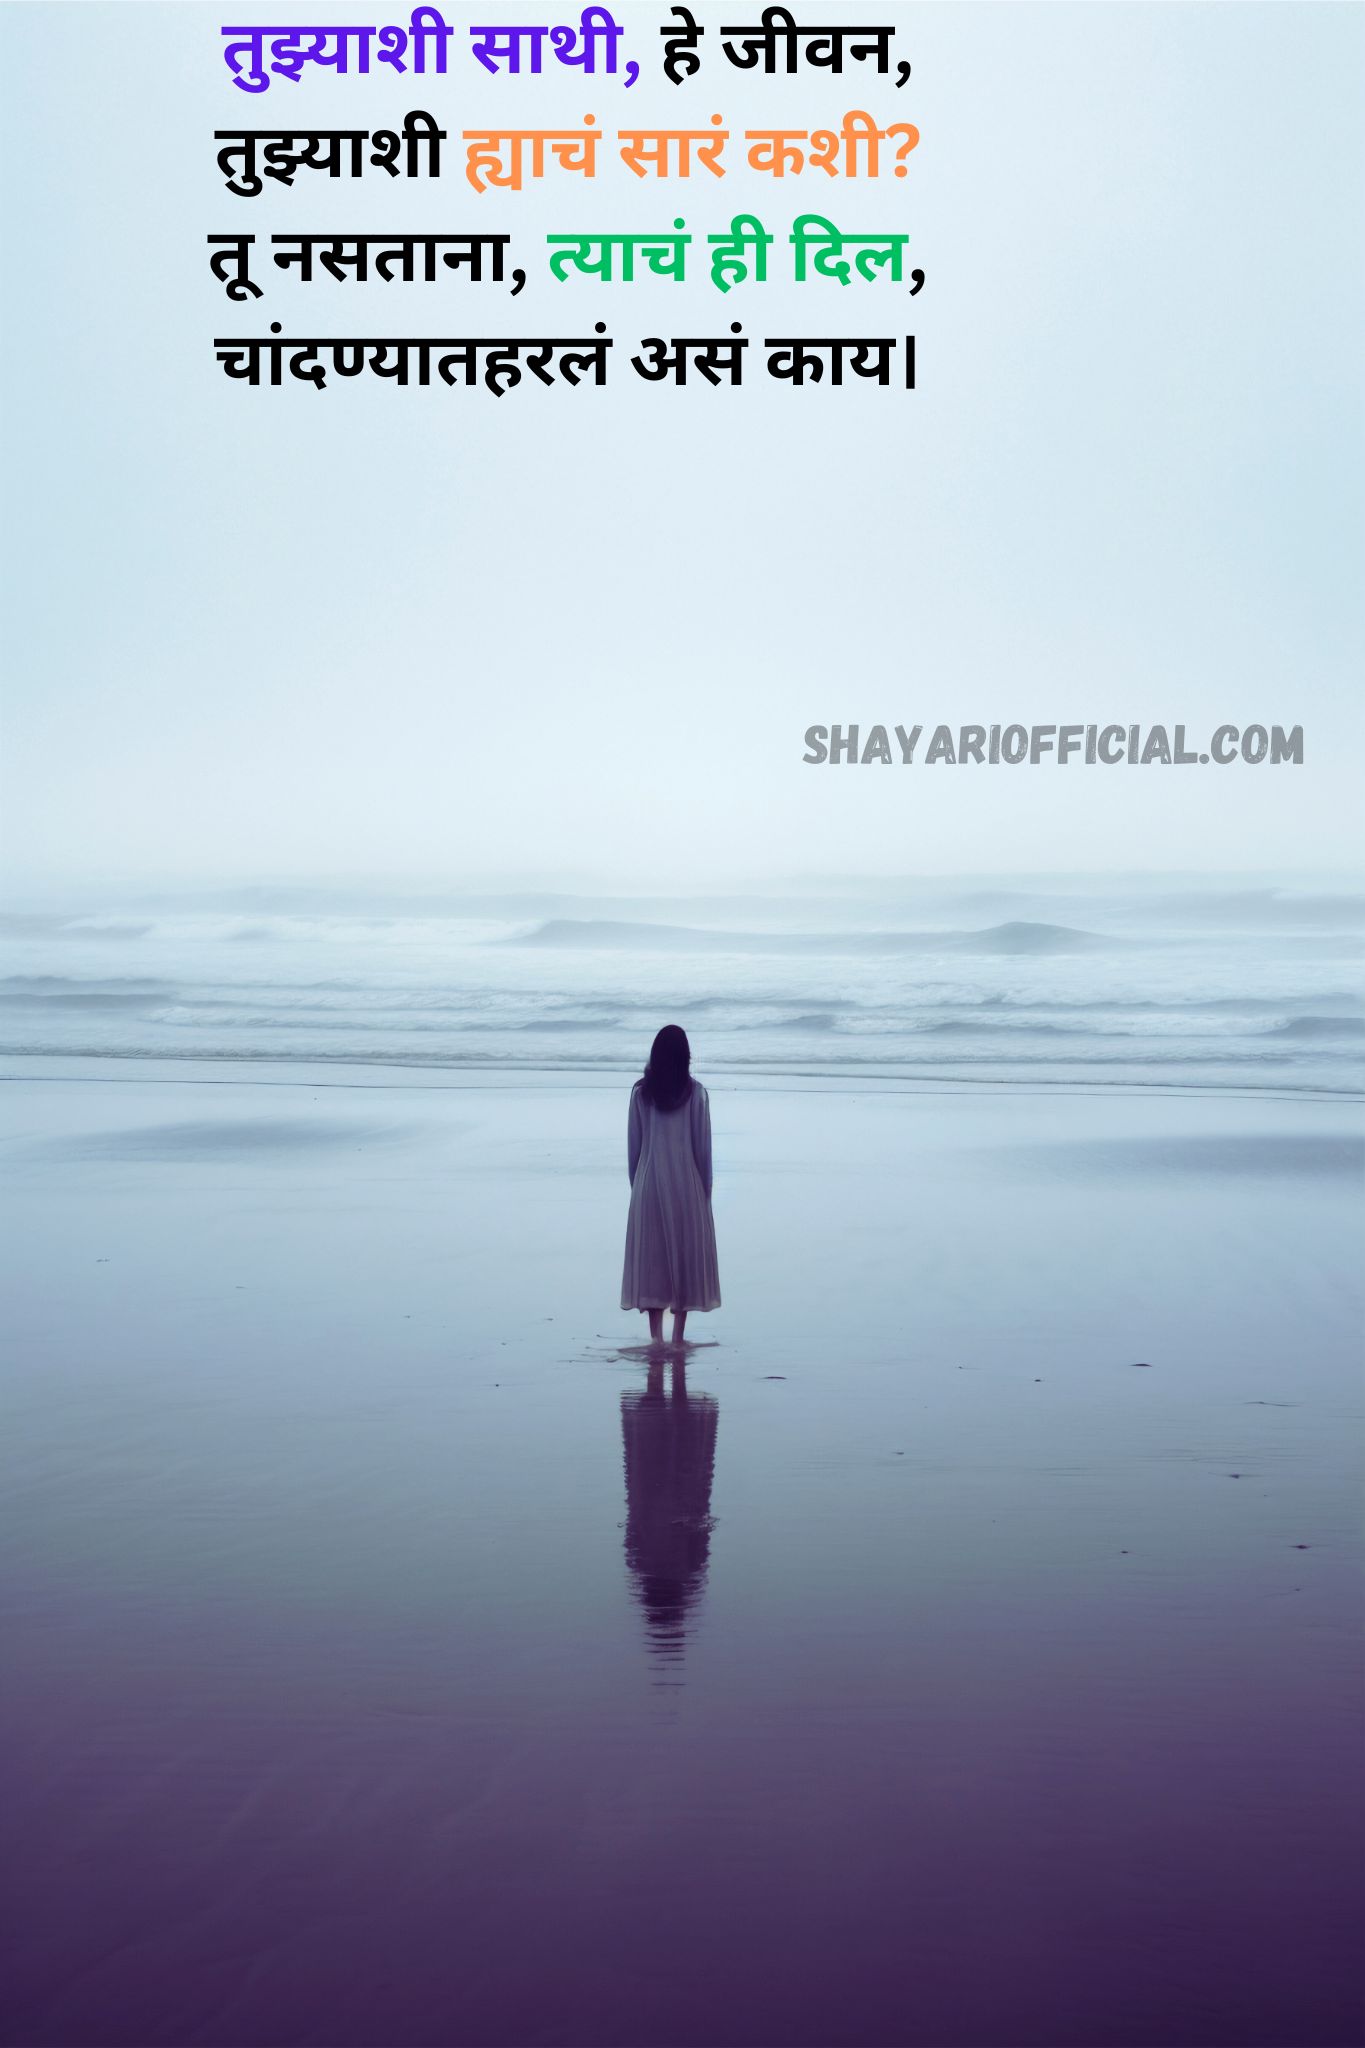 Sad Shayari Marathi